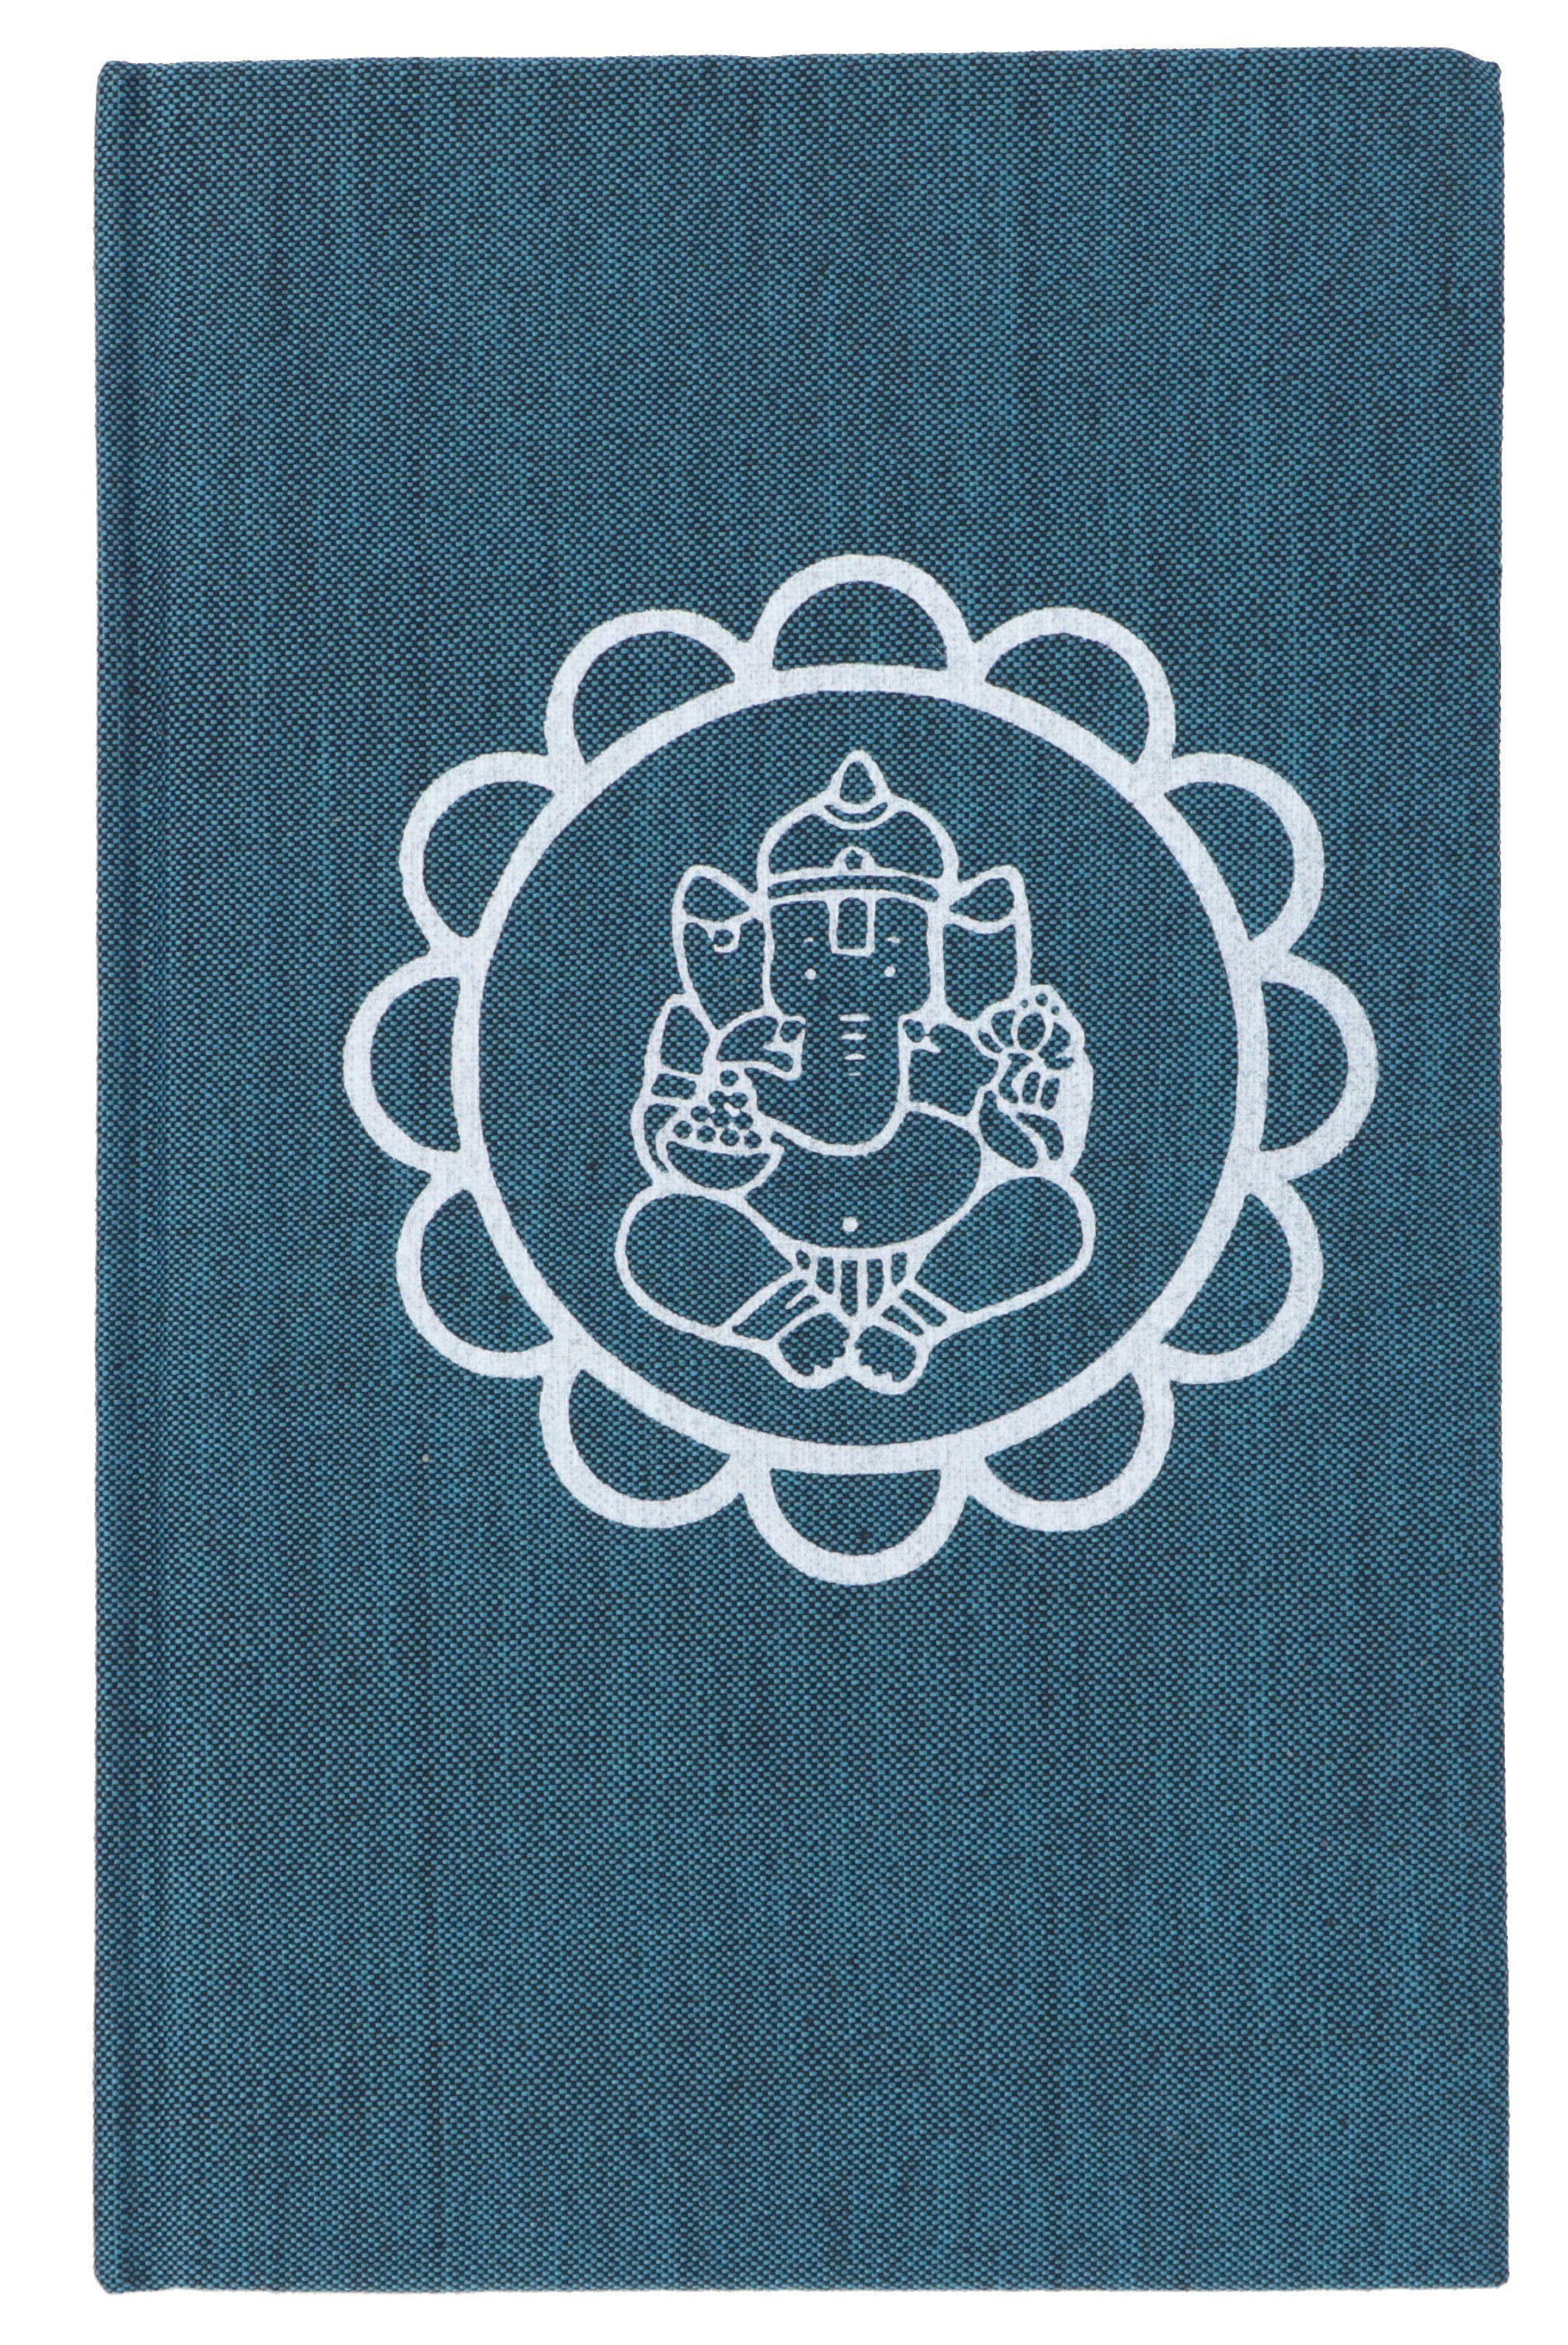 petrol Tagebuch Ganesh Guru-Shop Mandala - Tagebuch Notizbuch,